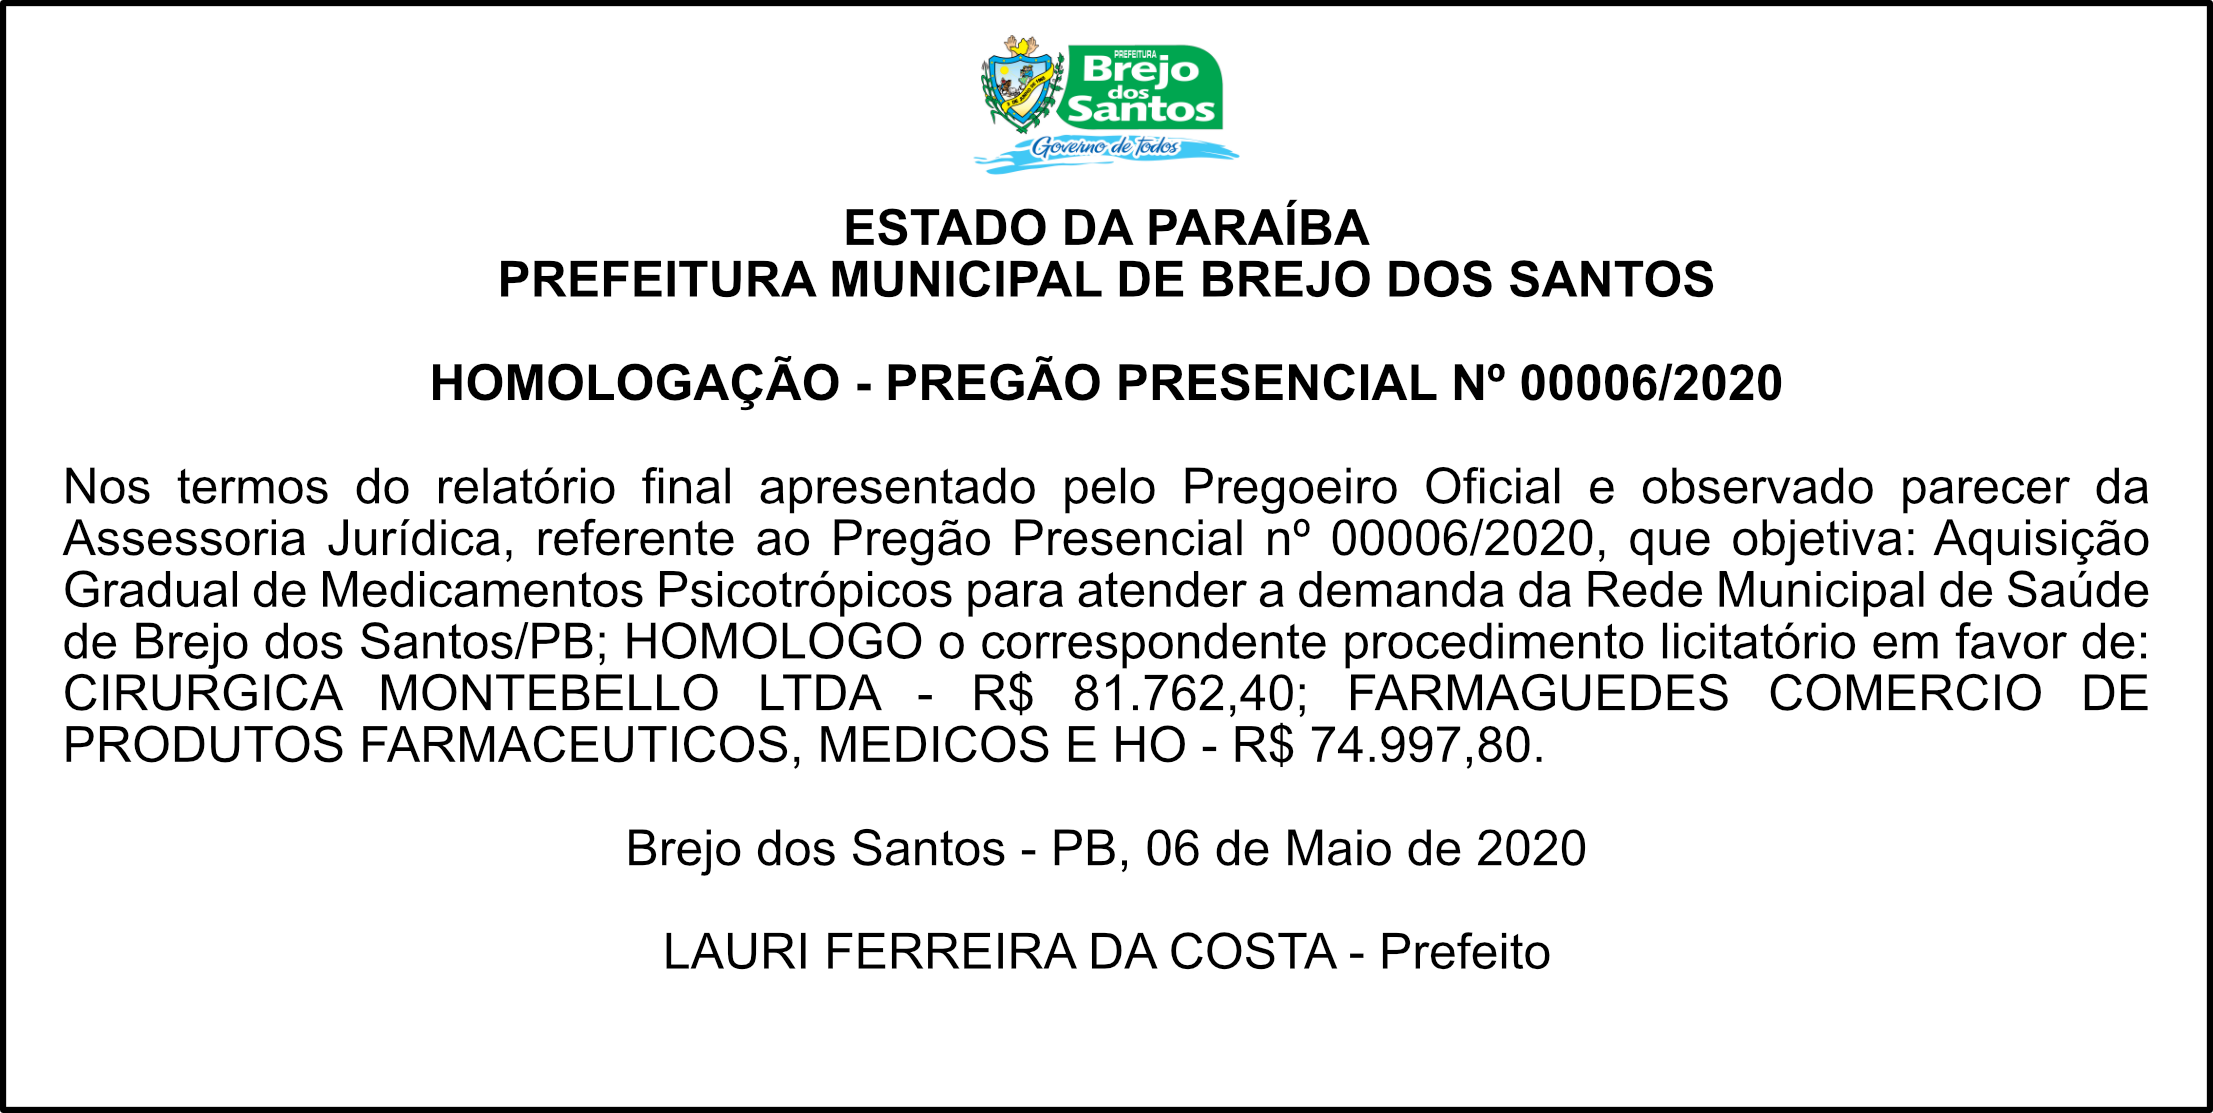 PREFEITURA MUNICIPAL DE BREJO DOS SANTOS – HOMOLOGAÇÃO – PREGÃO PRESENCIAL Nº 00006/2020